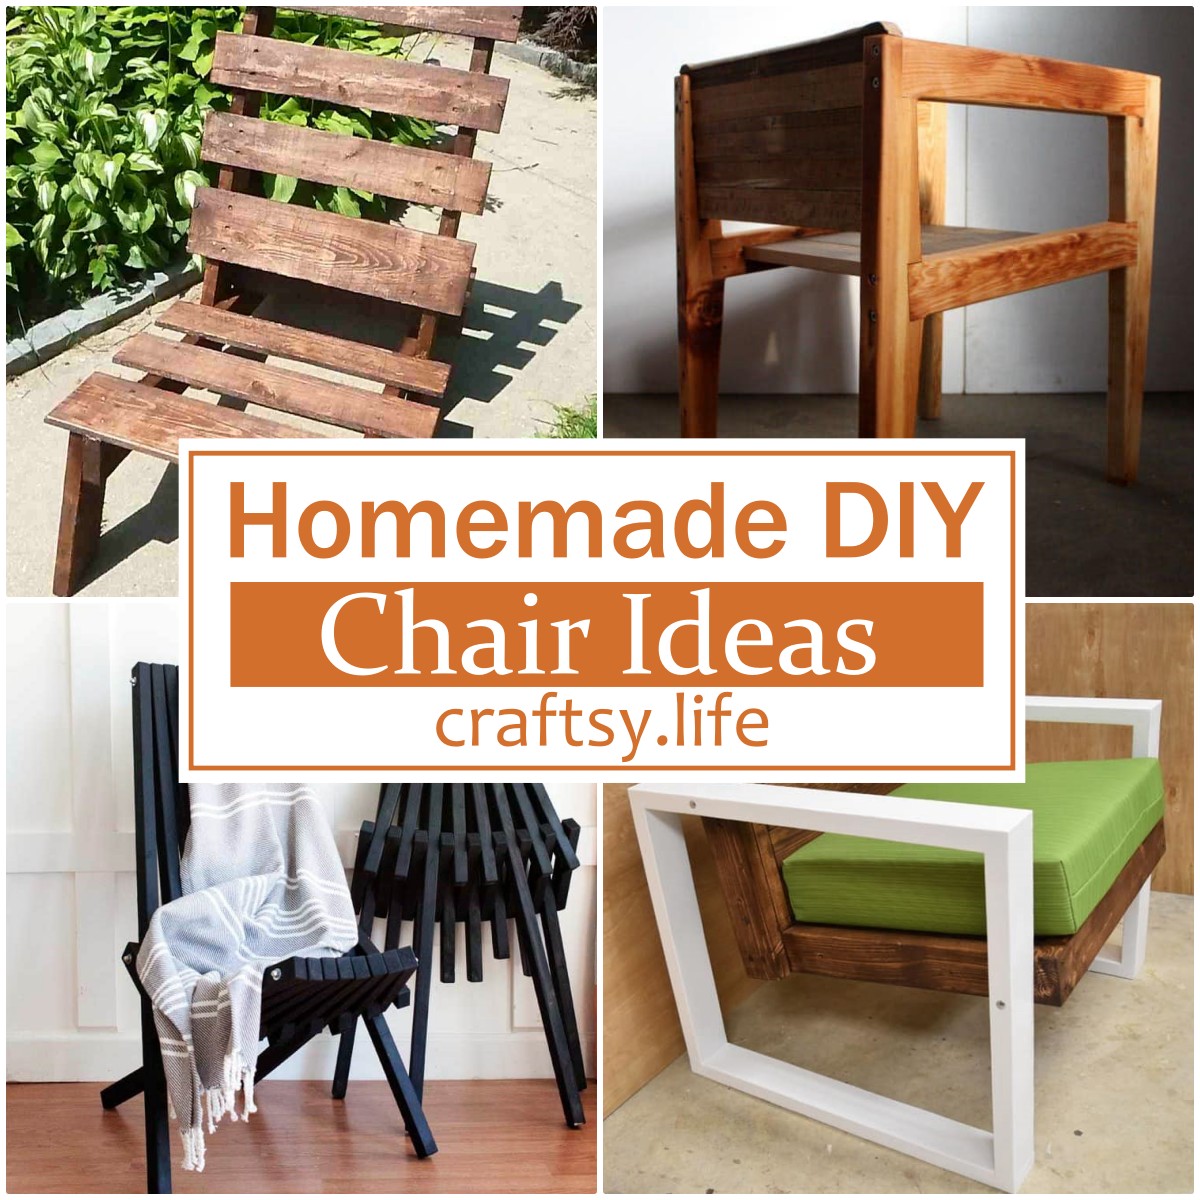 Homemade DIY Chair Ideas